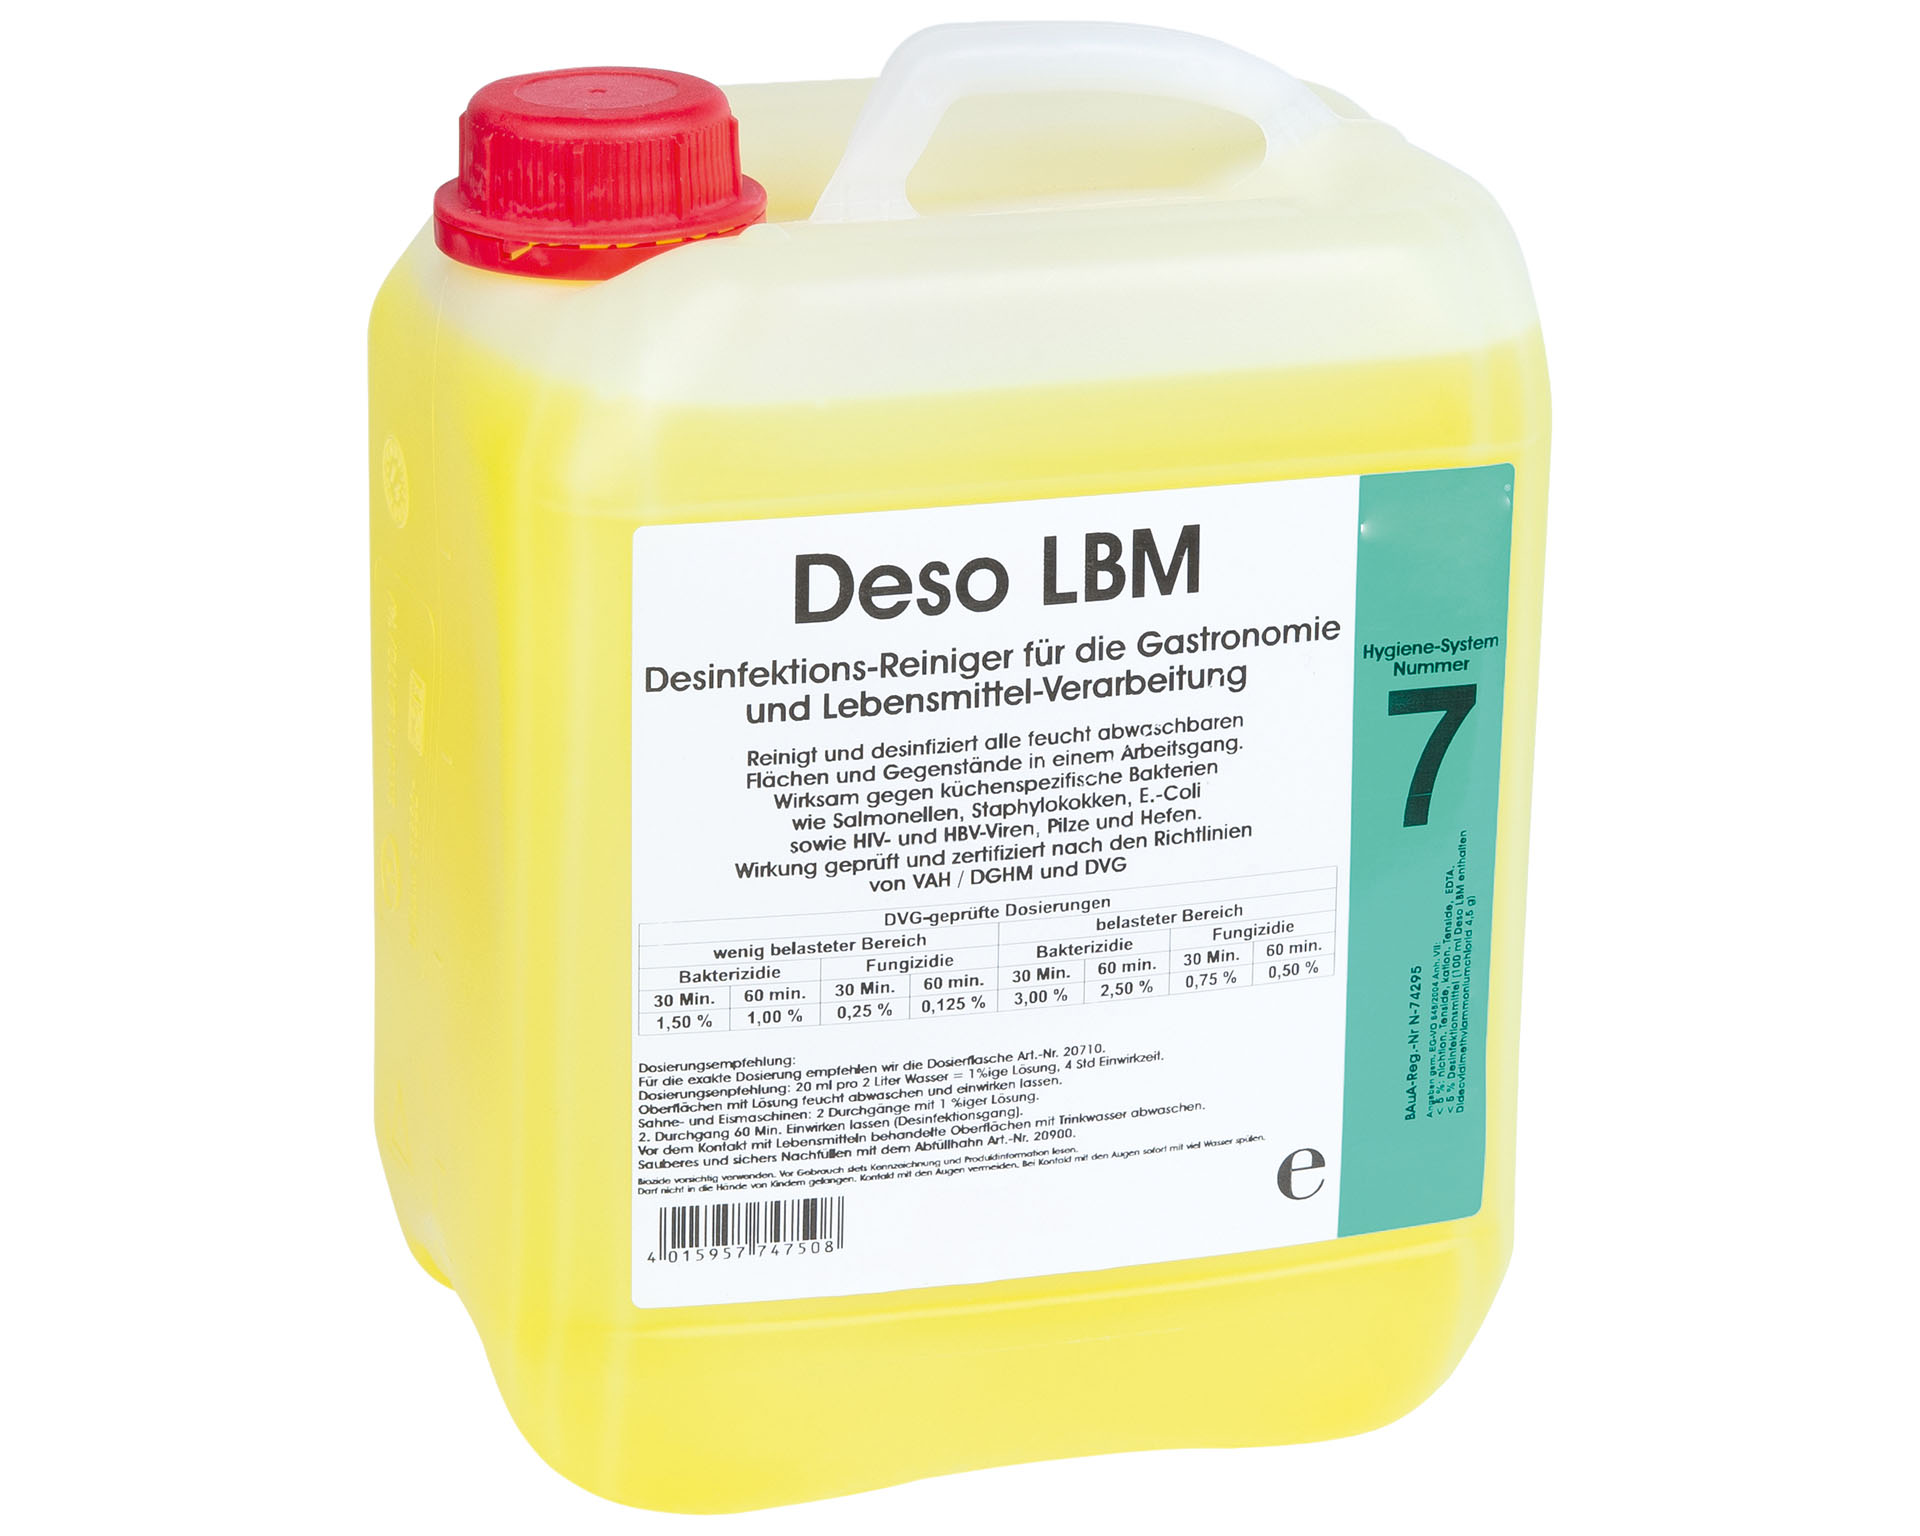 SARO Deso LBM Desinfektions-Reiniger

Modell NR.7